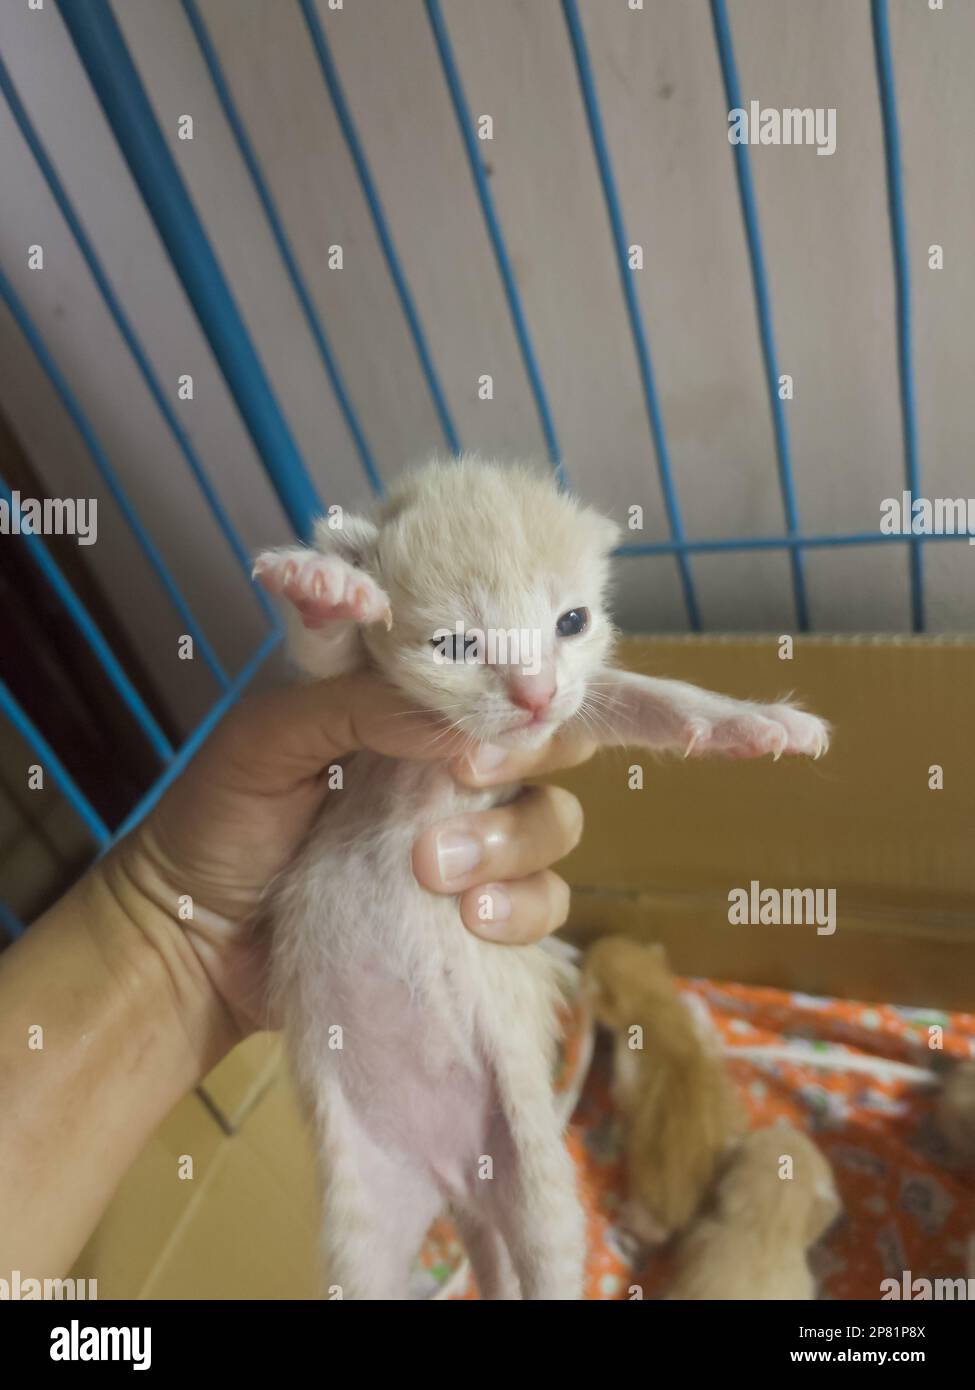 Newborn baby cat on female hand, stock photo Stock Photo